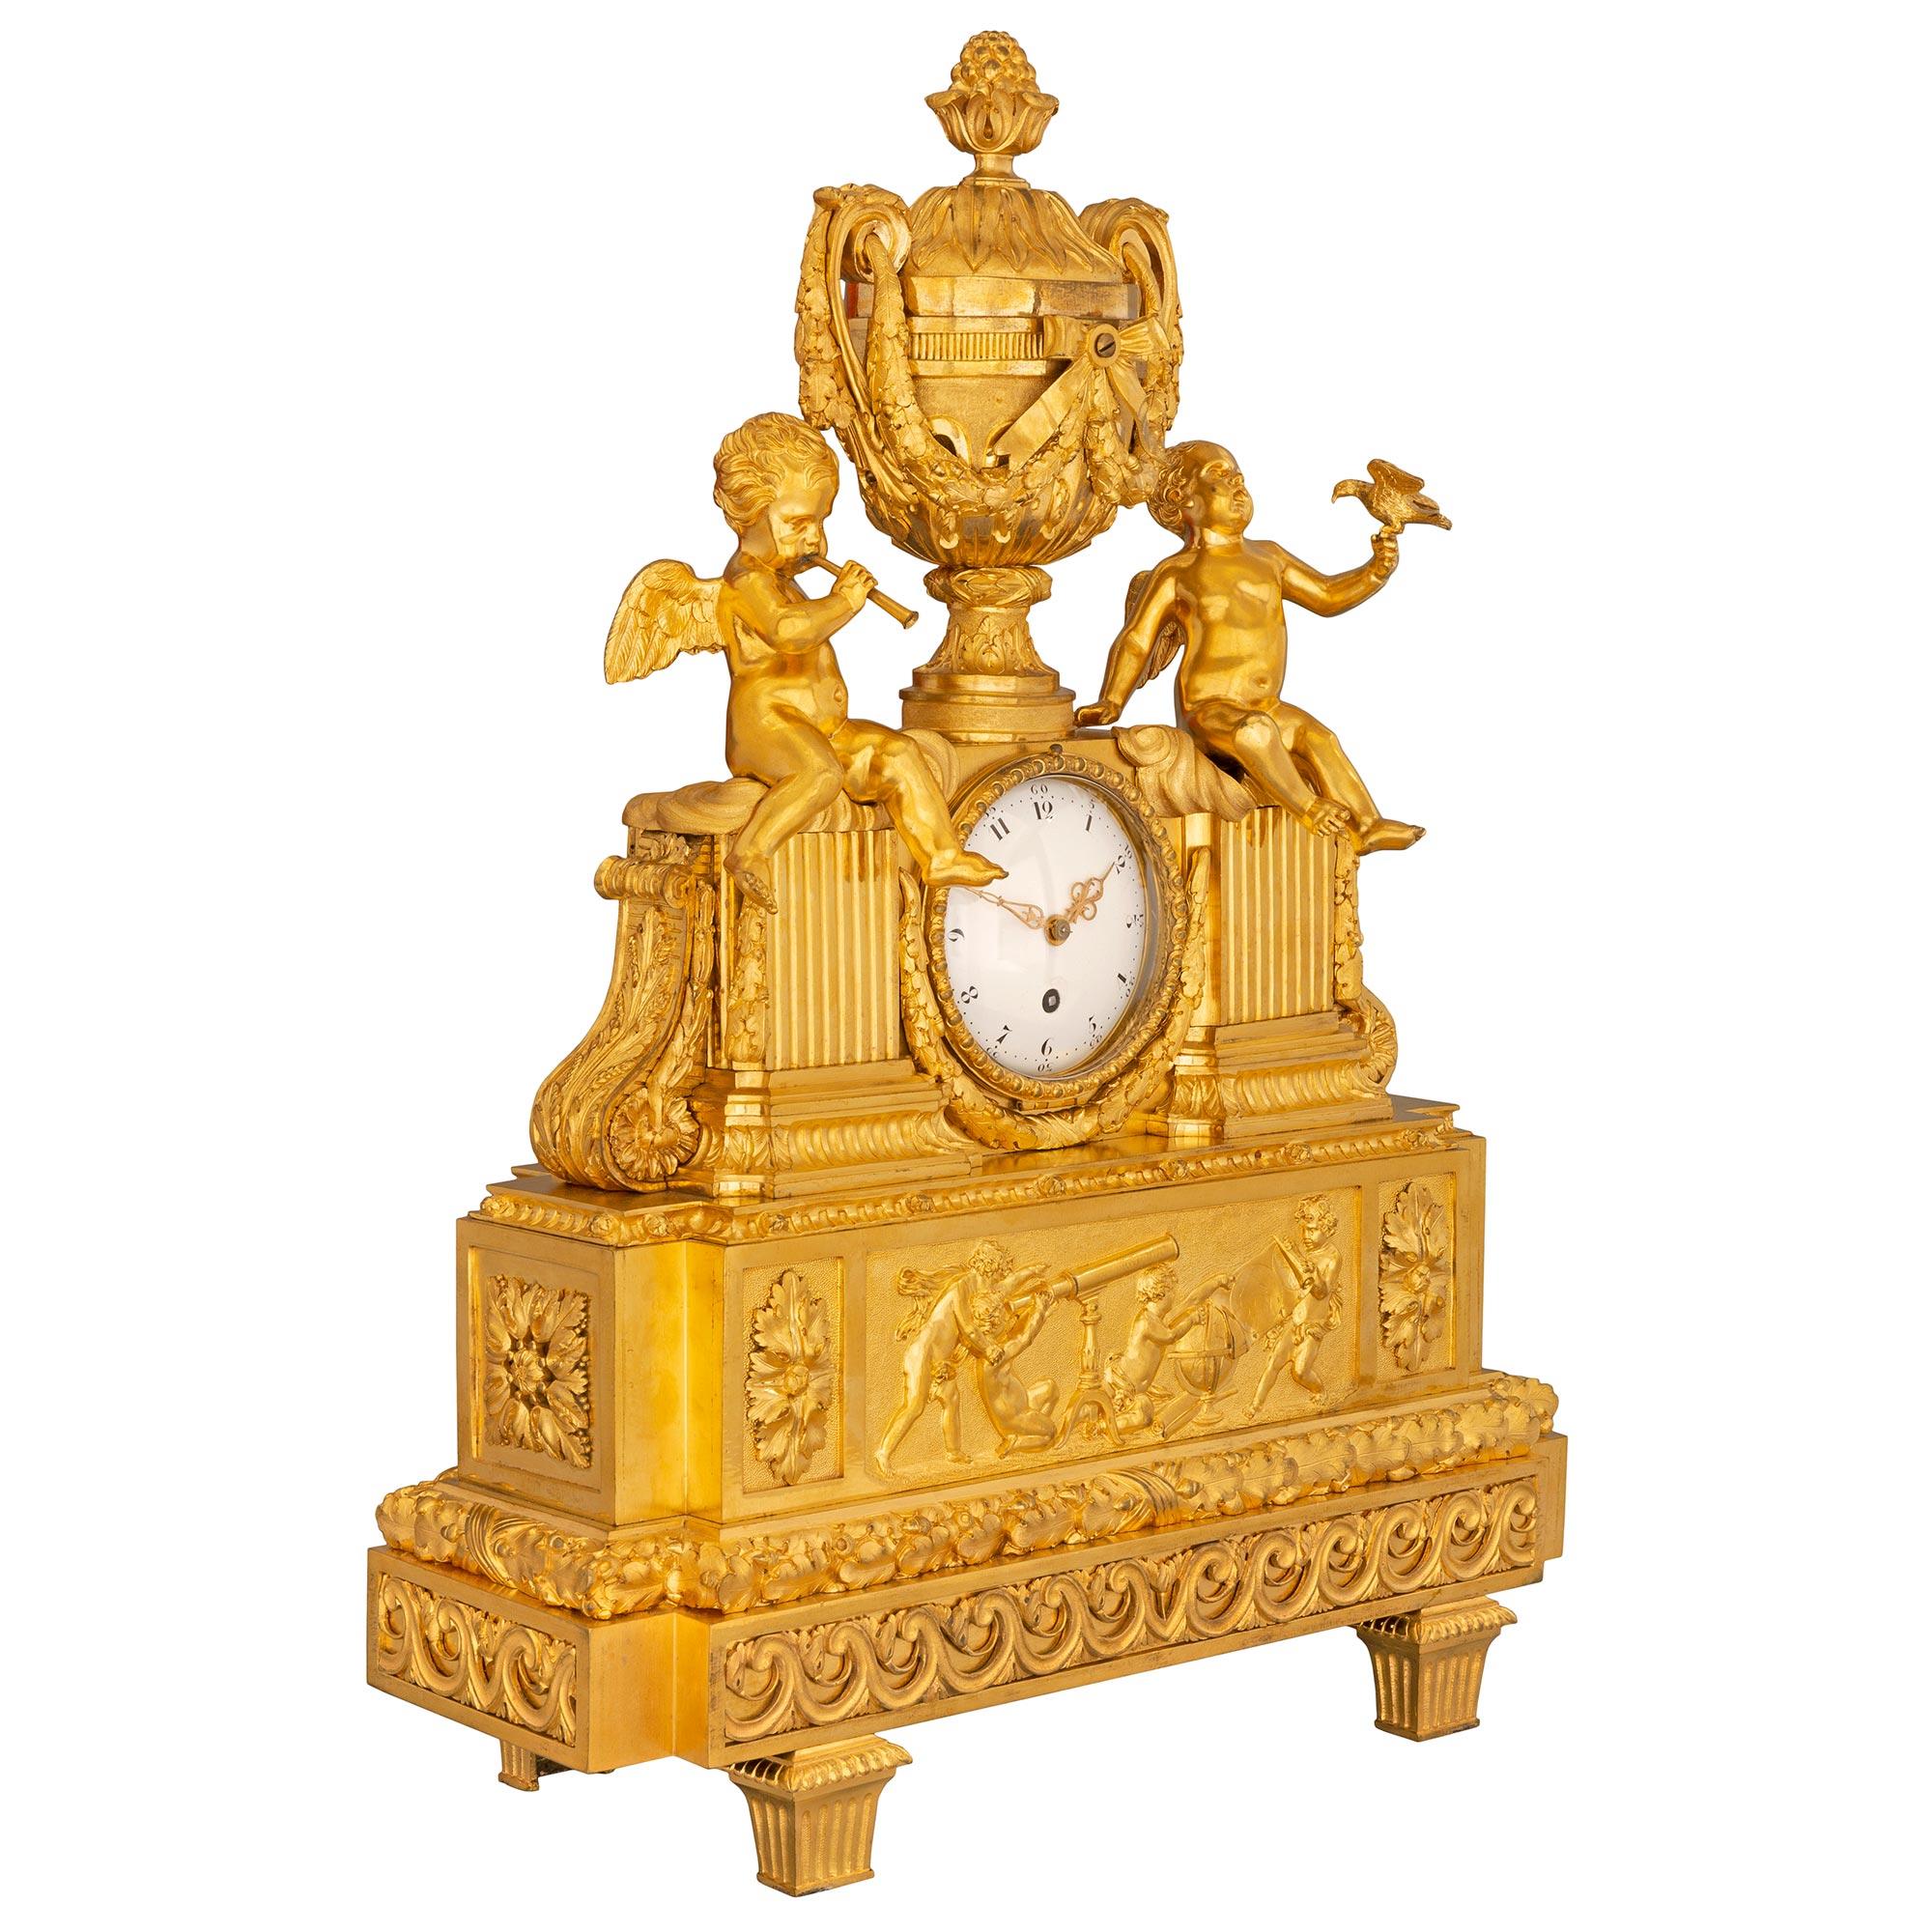 Une exquise horloge française du 19ème siècle, de style Louis XVI et de la période Belle Époque, en bronze doré. L'horloge est surélevée par d'élégants pieds-blocs avec de fines cannelures et les oves. D'impressionnantes volutes vitruviennes en